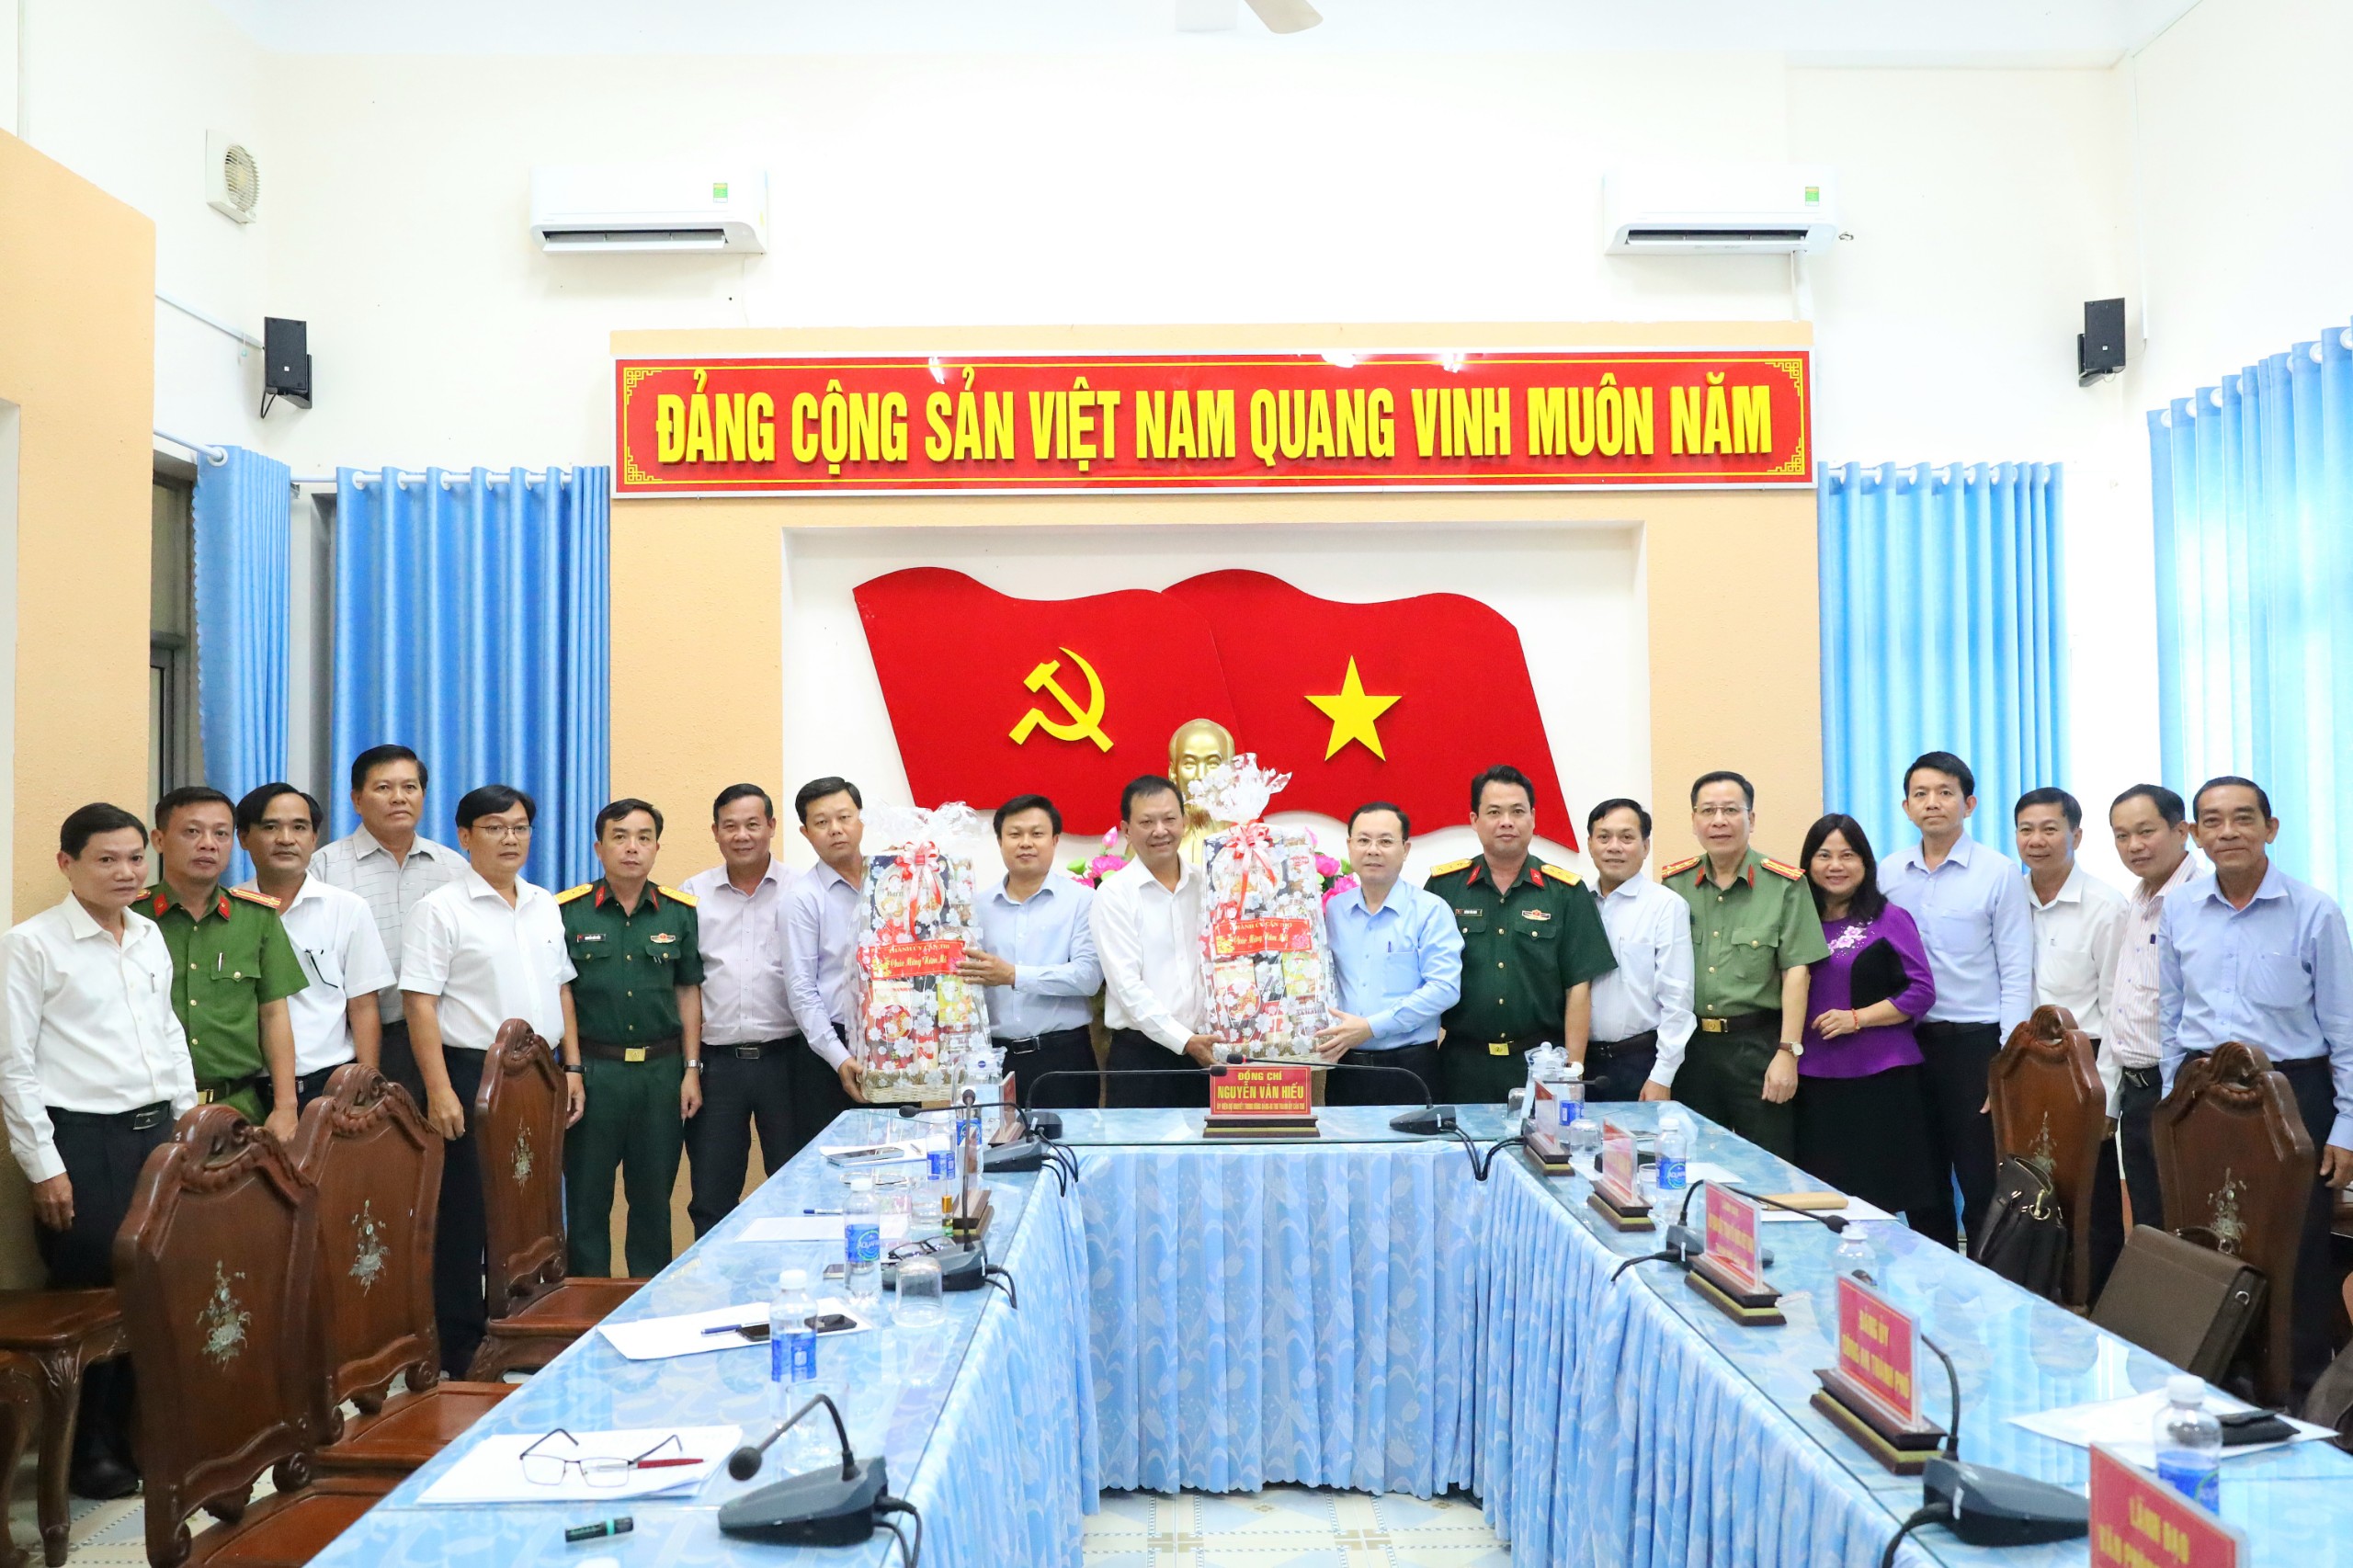 Ông Nguyễn Văn Hiếu - Ủy viên dự khuyết BCH Trung ương Đảng, Bí thư Thành ủy Cần Thơ trao tặng quà Tết cho huyện Vĩnh Thạnh.